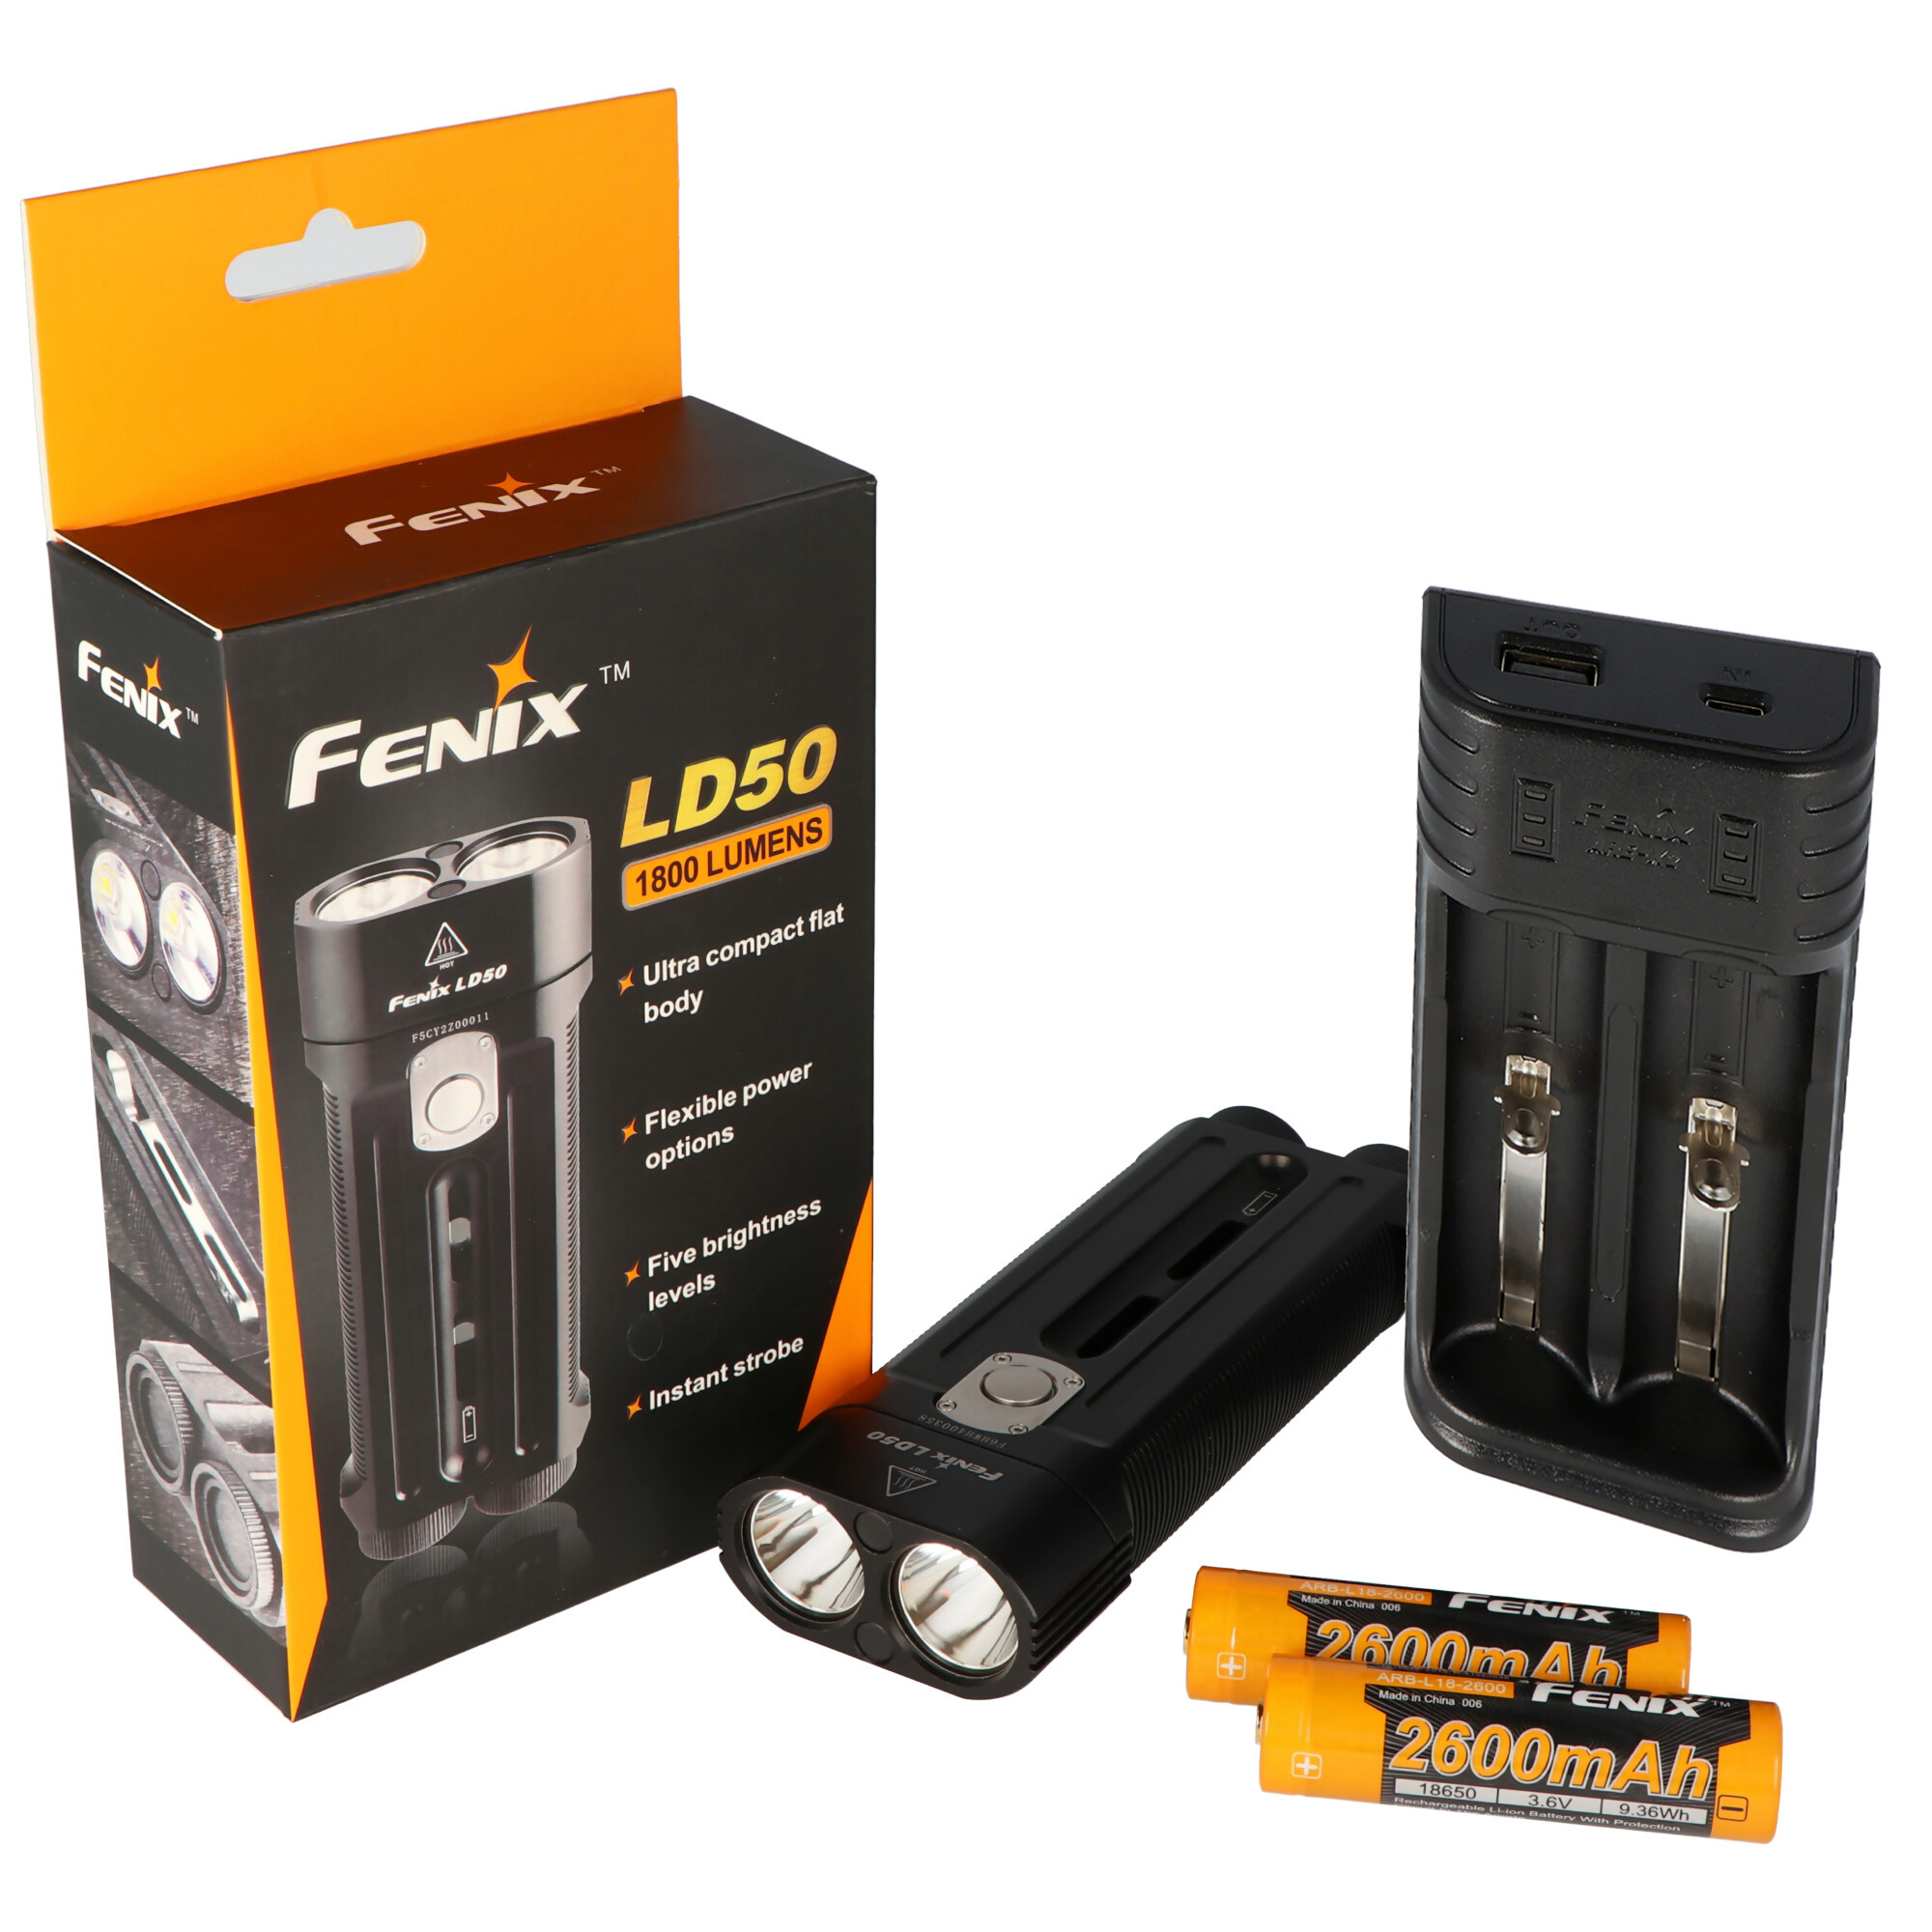 Fenix LD50 Cree XM-L2 U2 LED Taschenlampe, 1800 Lumen mit zweifach LED und getrennter Stromversorgung